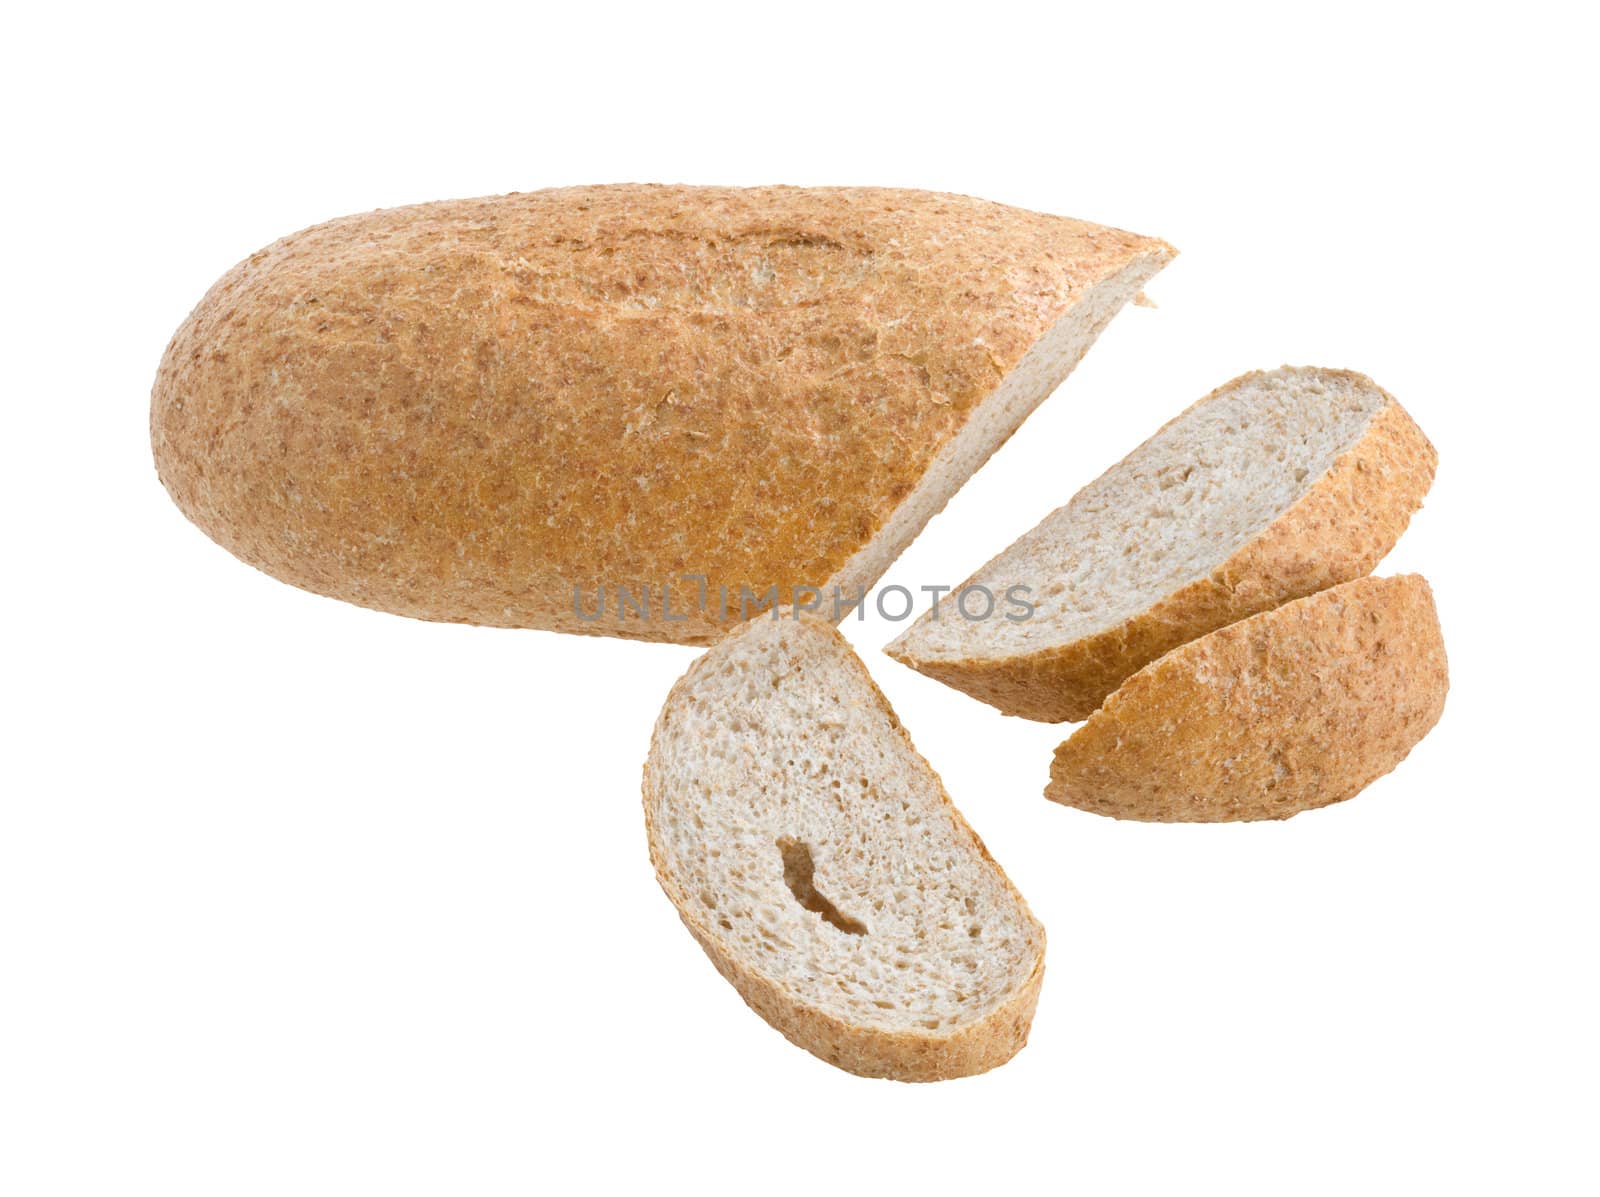 Bread by fotoedgaras